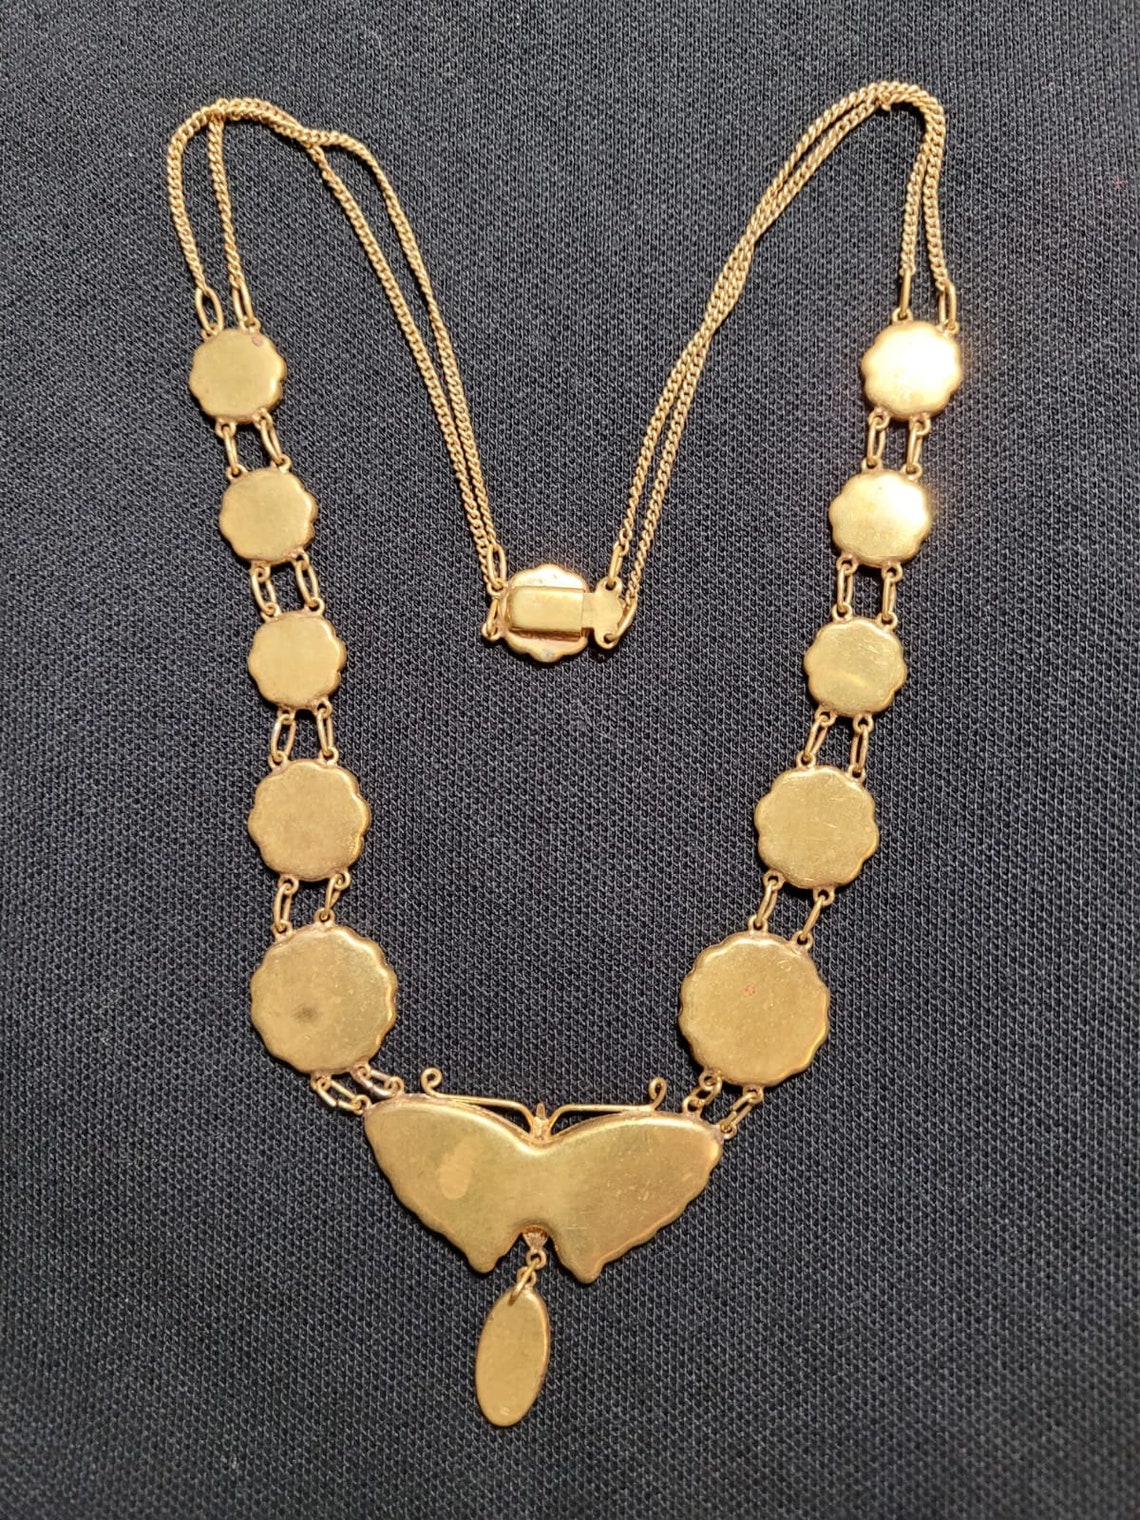 Antique rare Japanese damascene necklace stunning K24 gold and | Etsy